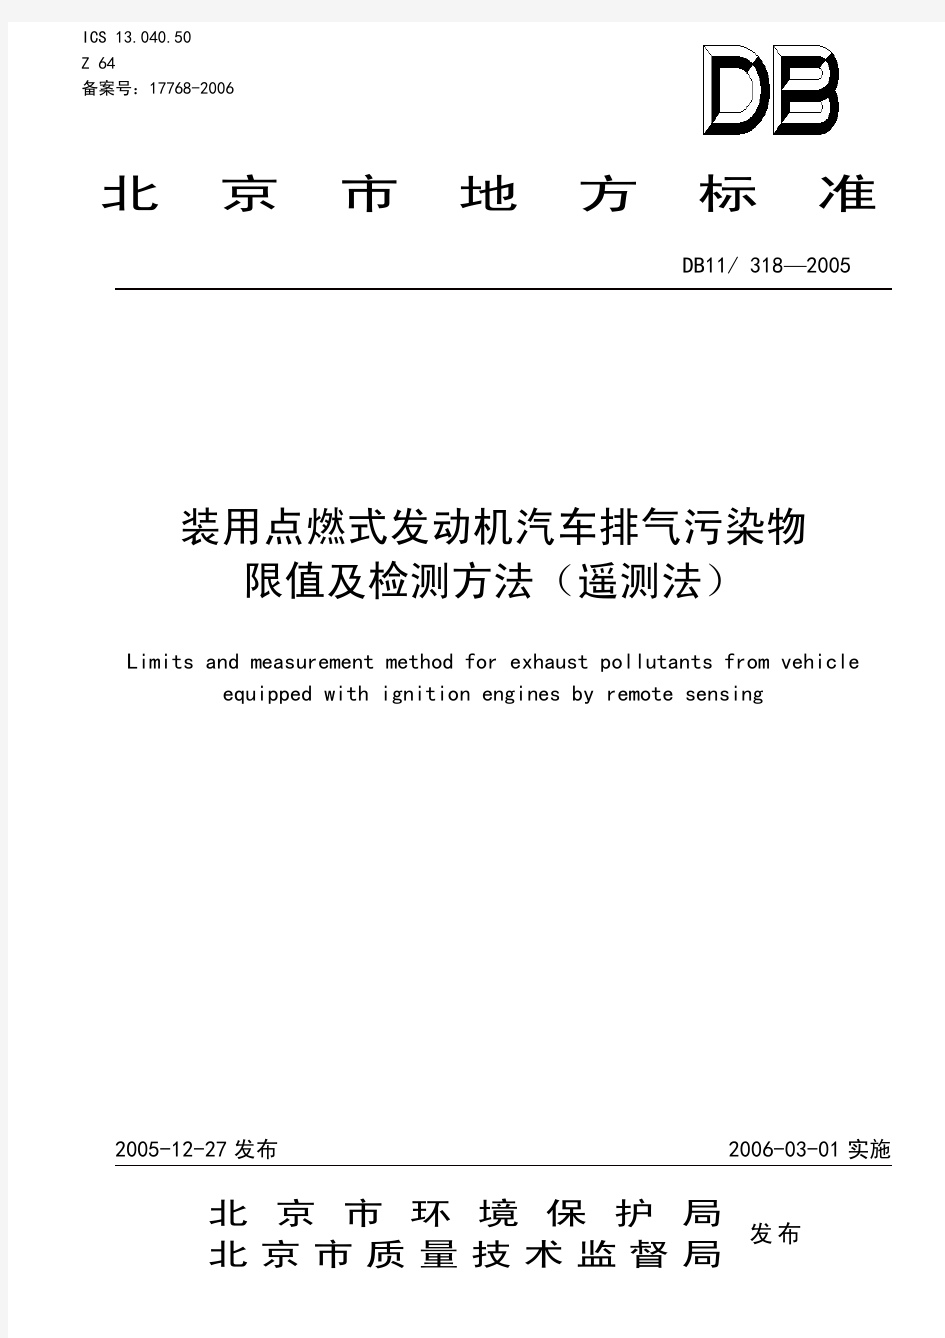 0北京-装用点燃式发动机汽车排气污染物限值及检测方法(遥测法)